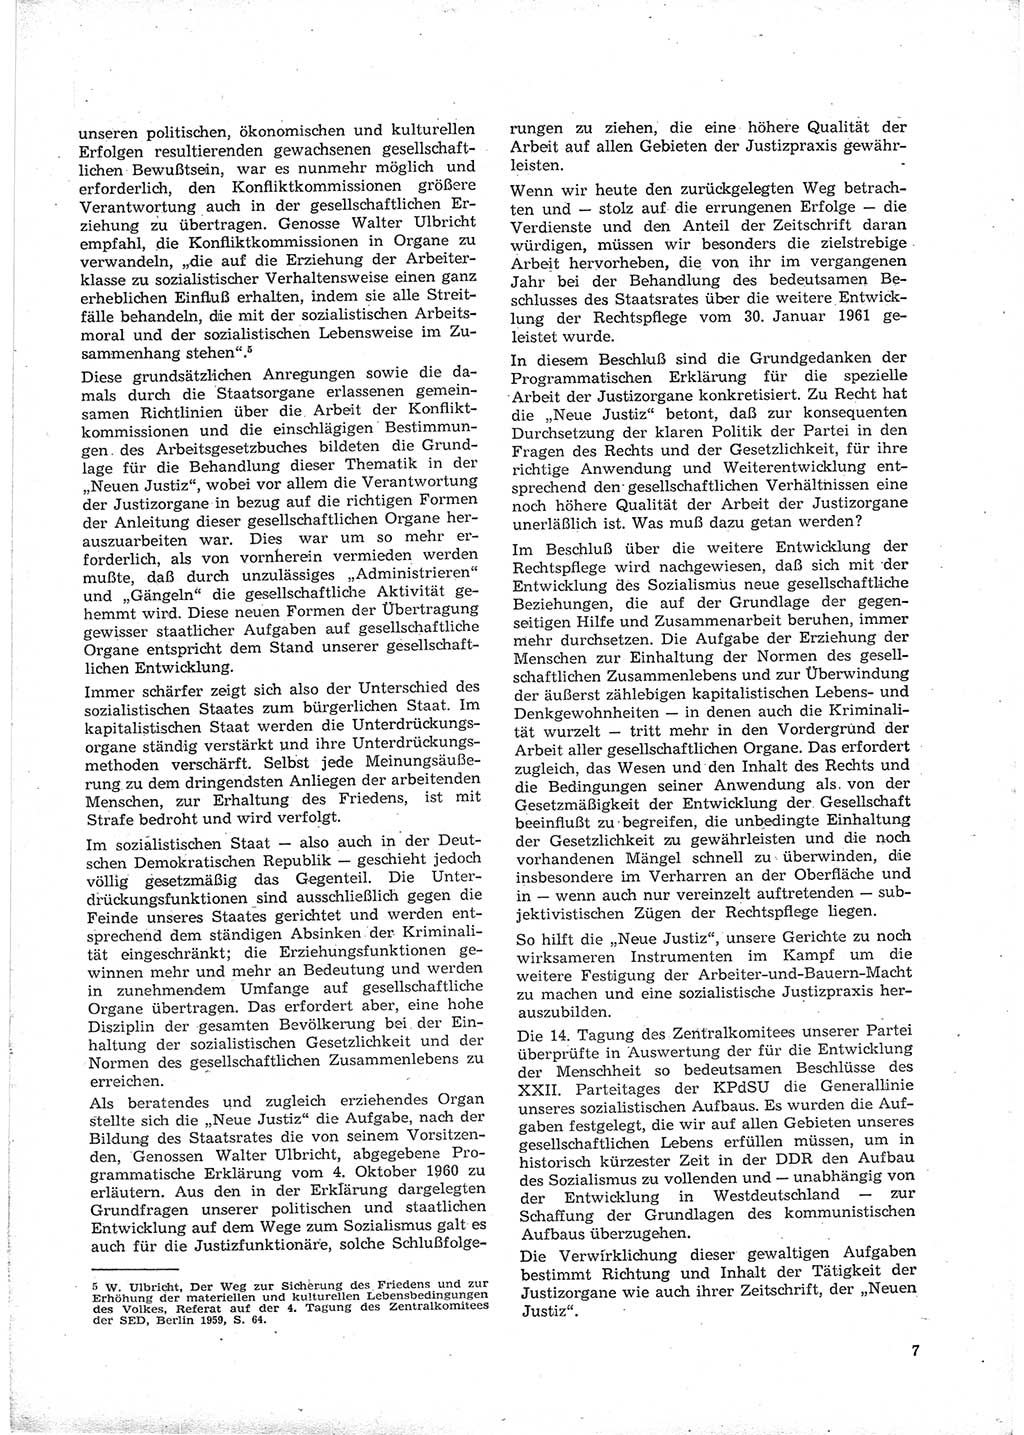 Neue Justiz (NJ), Zeitschrift für Recht und Rechtswissenschaft [Deutsche Demokratische Republik (DDR)], 16. Jahrgang 1962, Seite 7 (NJ DDR 1962, S. 7)